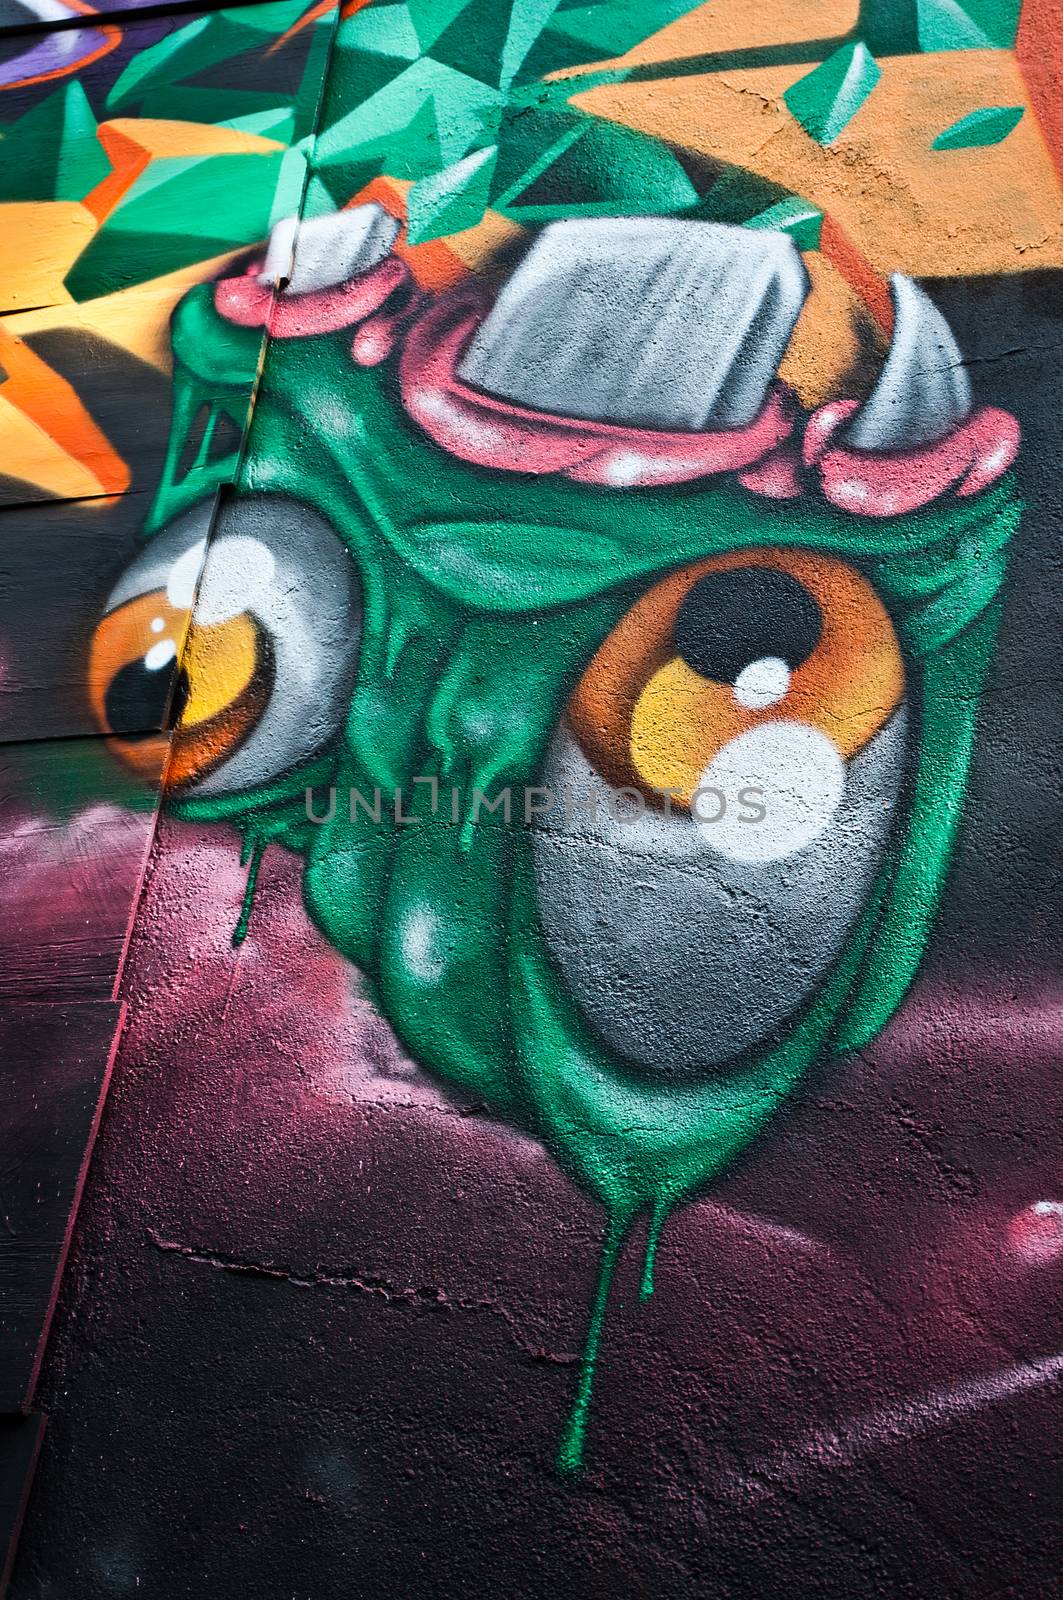 Urban Art - monster by NeydtStock